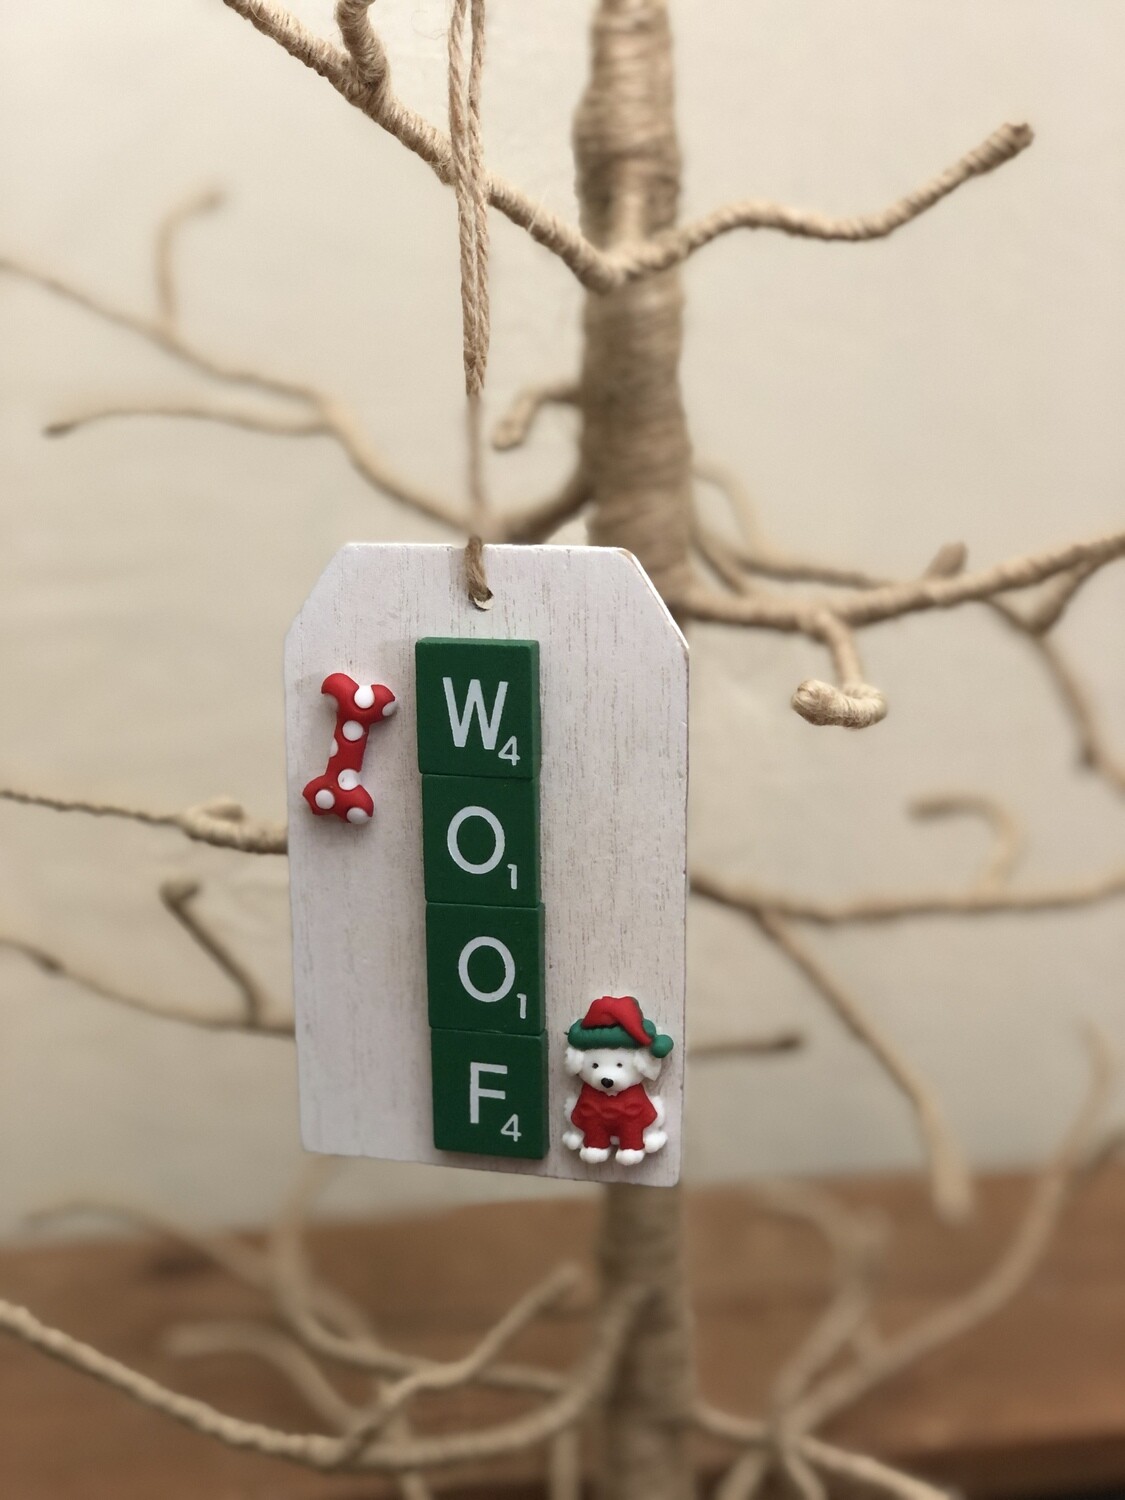 Woof Green &amp; Red Sm. Scrabble Tag Ornament 2.5&quot;L x 4&quot;H